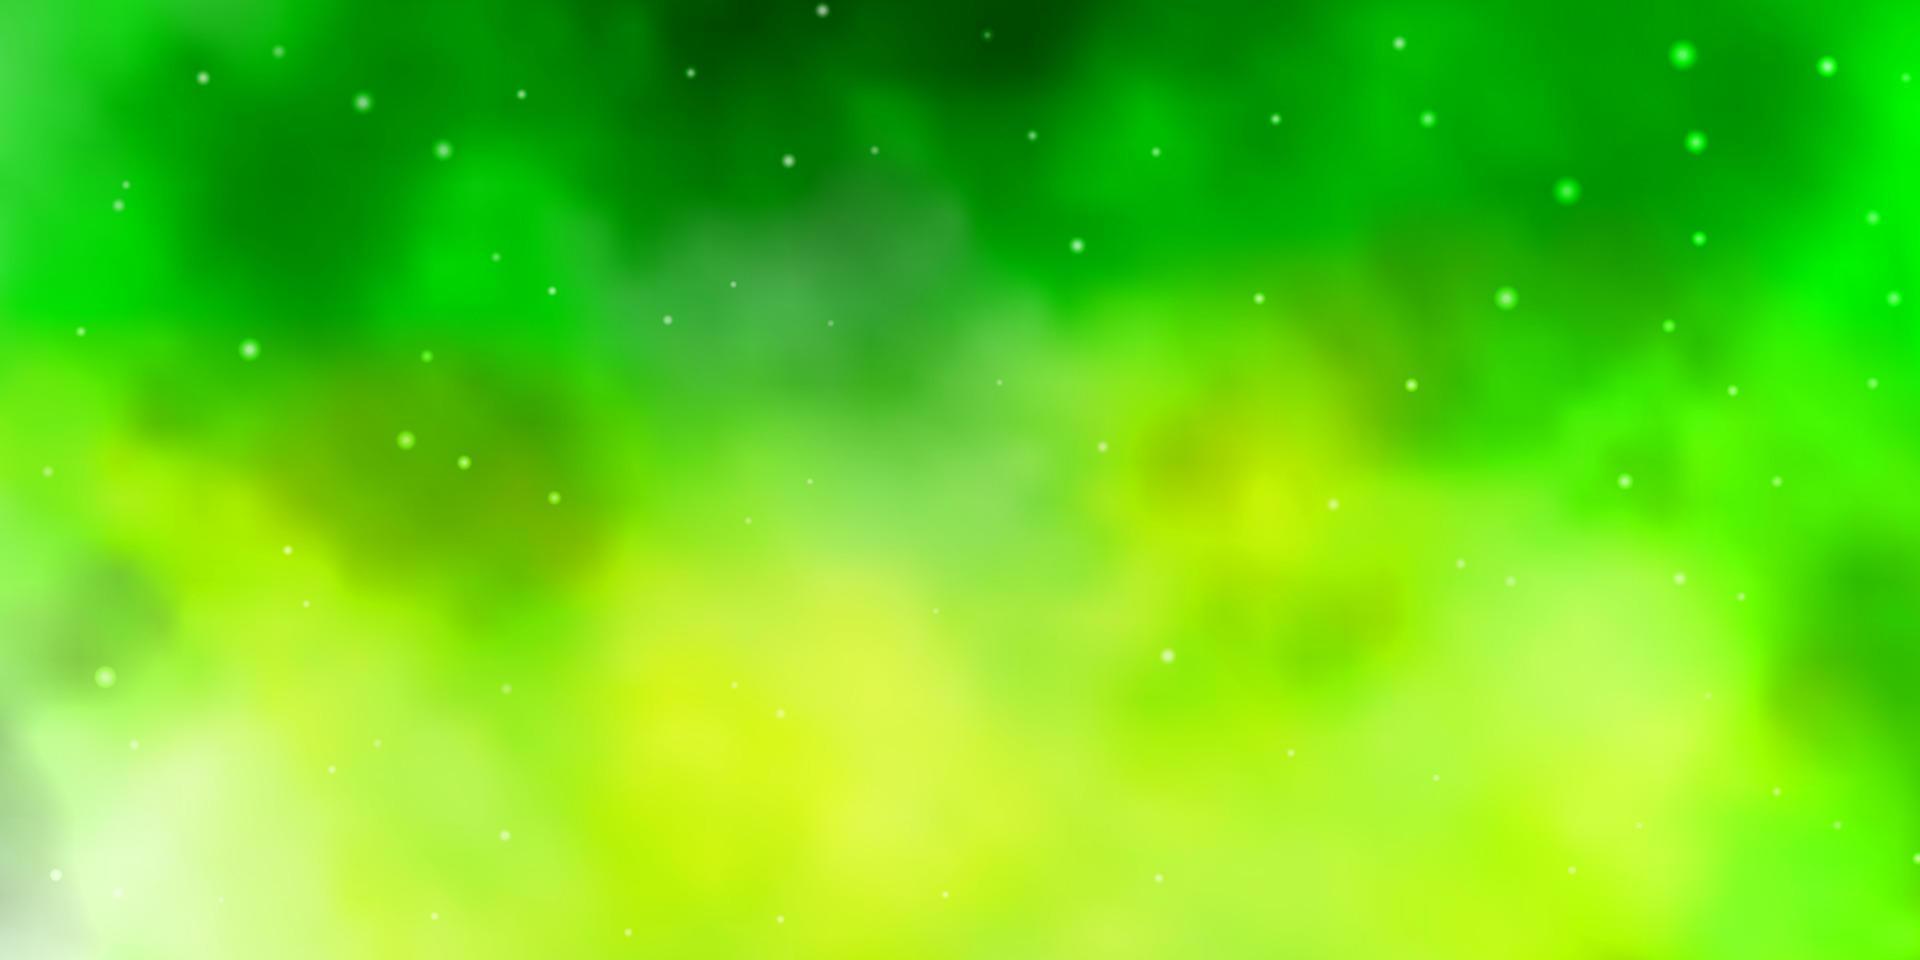 fond de vecteur vert clair avec des étoiles colorées.